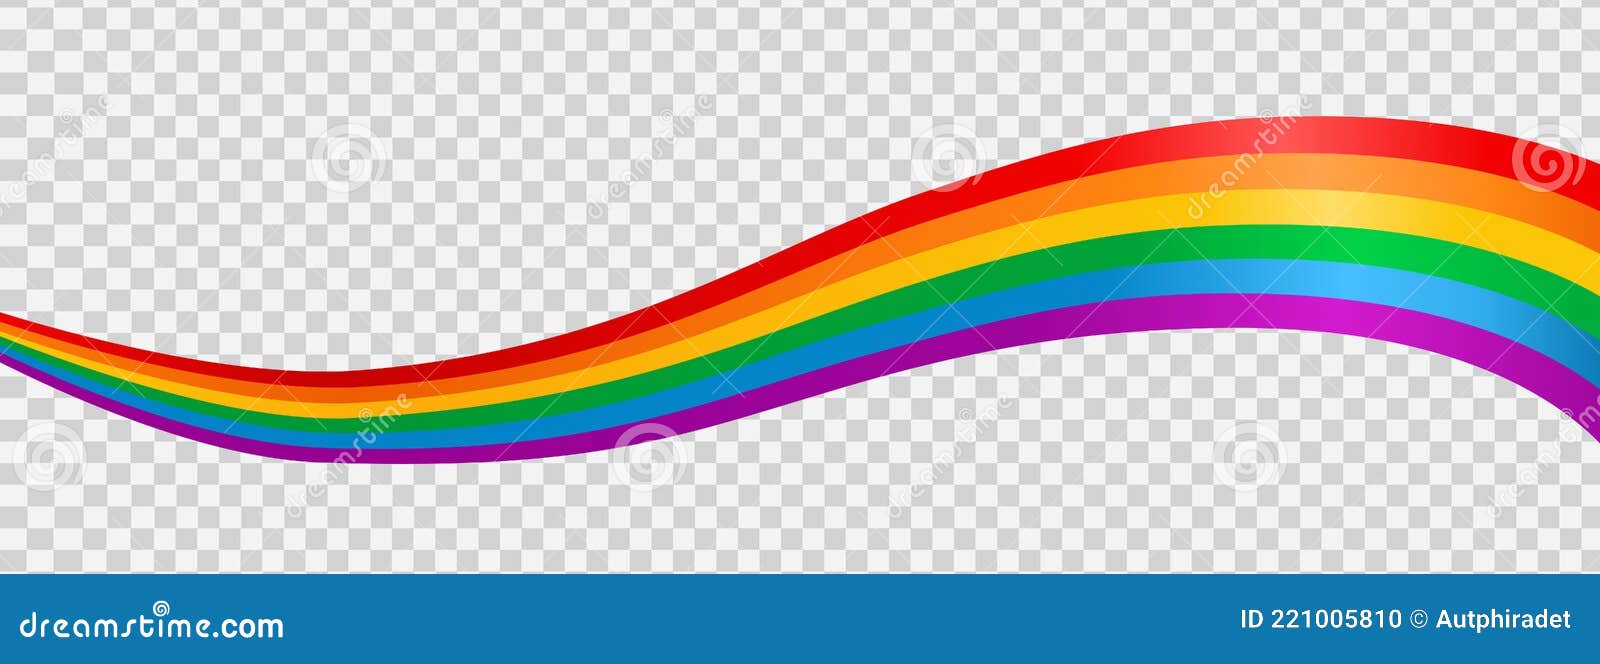 Rainbow LGBT Flag: Bạn muốn chia sẻ thông điệp đa dạng tình dục với mọi người? Hãy xem hình ảnh cờ Queer Pride như một bước đi đầu tiên. Hình ảnh rực rỡ này với nhiều màu sắc khác nhau sẽ giúp bạn thể hiện sự ủng hộ và tôn trọng đến đội ngũ LGBT.